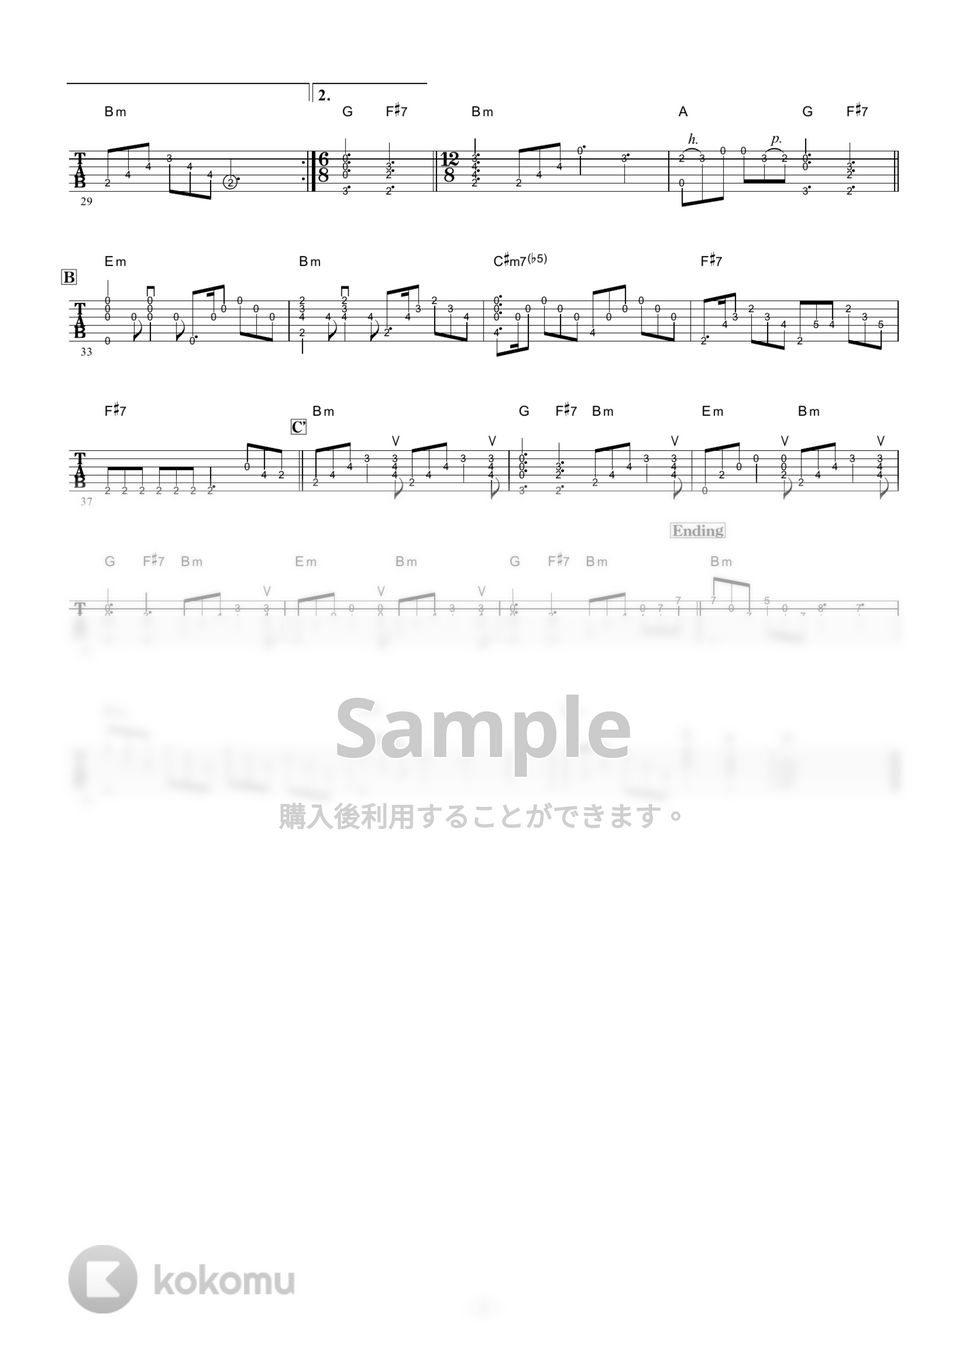 小坂恭子 - 想い出まくら (ギター伴奏/イントロ・間奏ソロギター) by 伴奏屋TAB譜